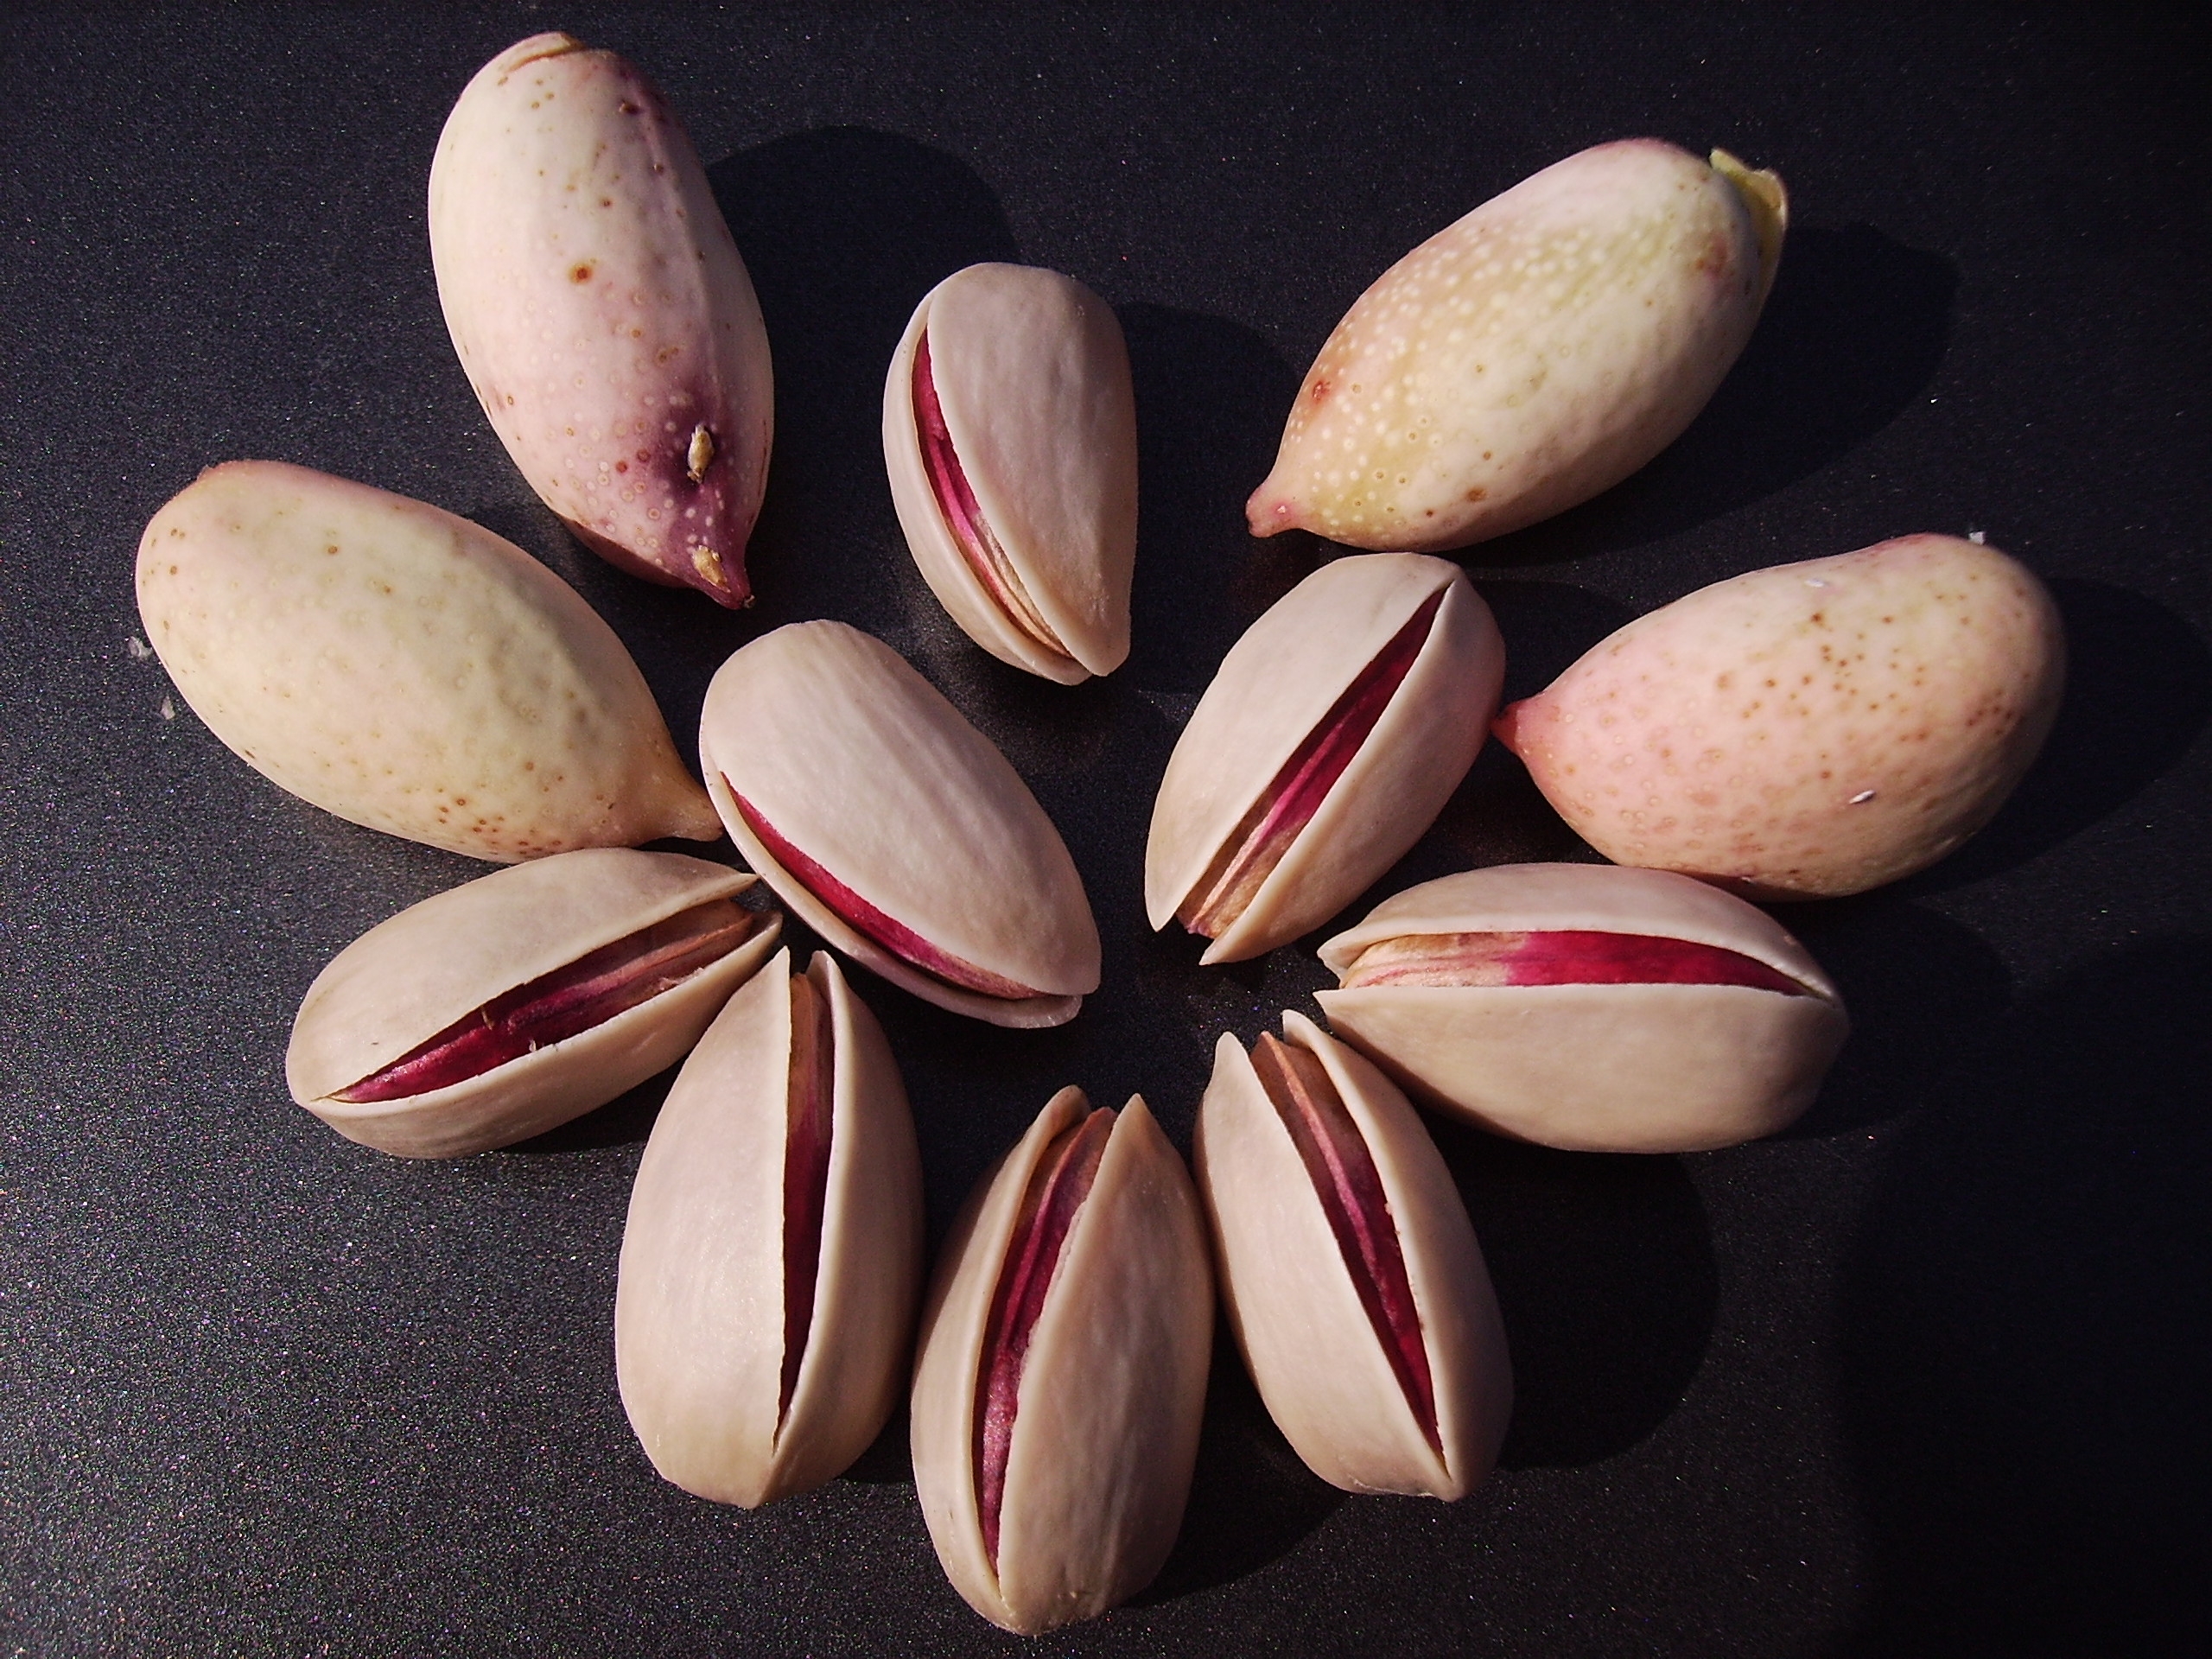  Export of Ahmad Aghaei Iranian pistachios